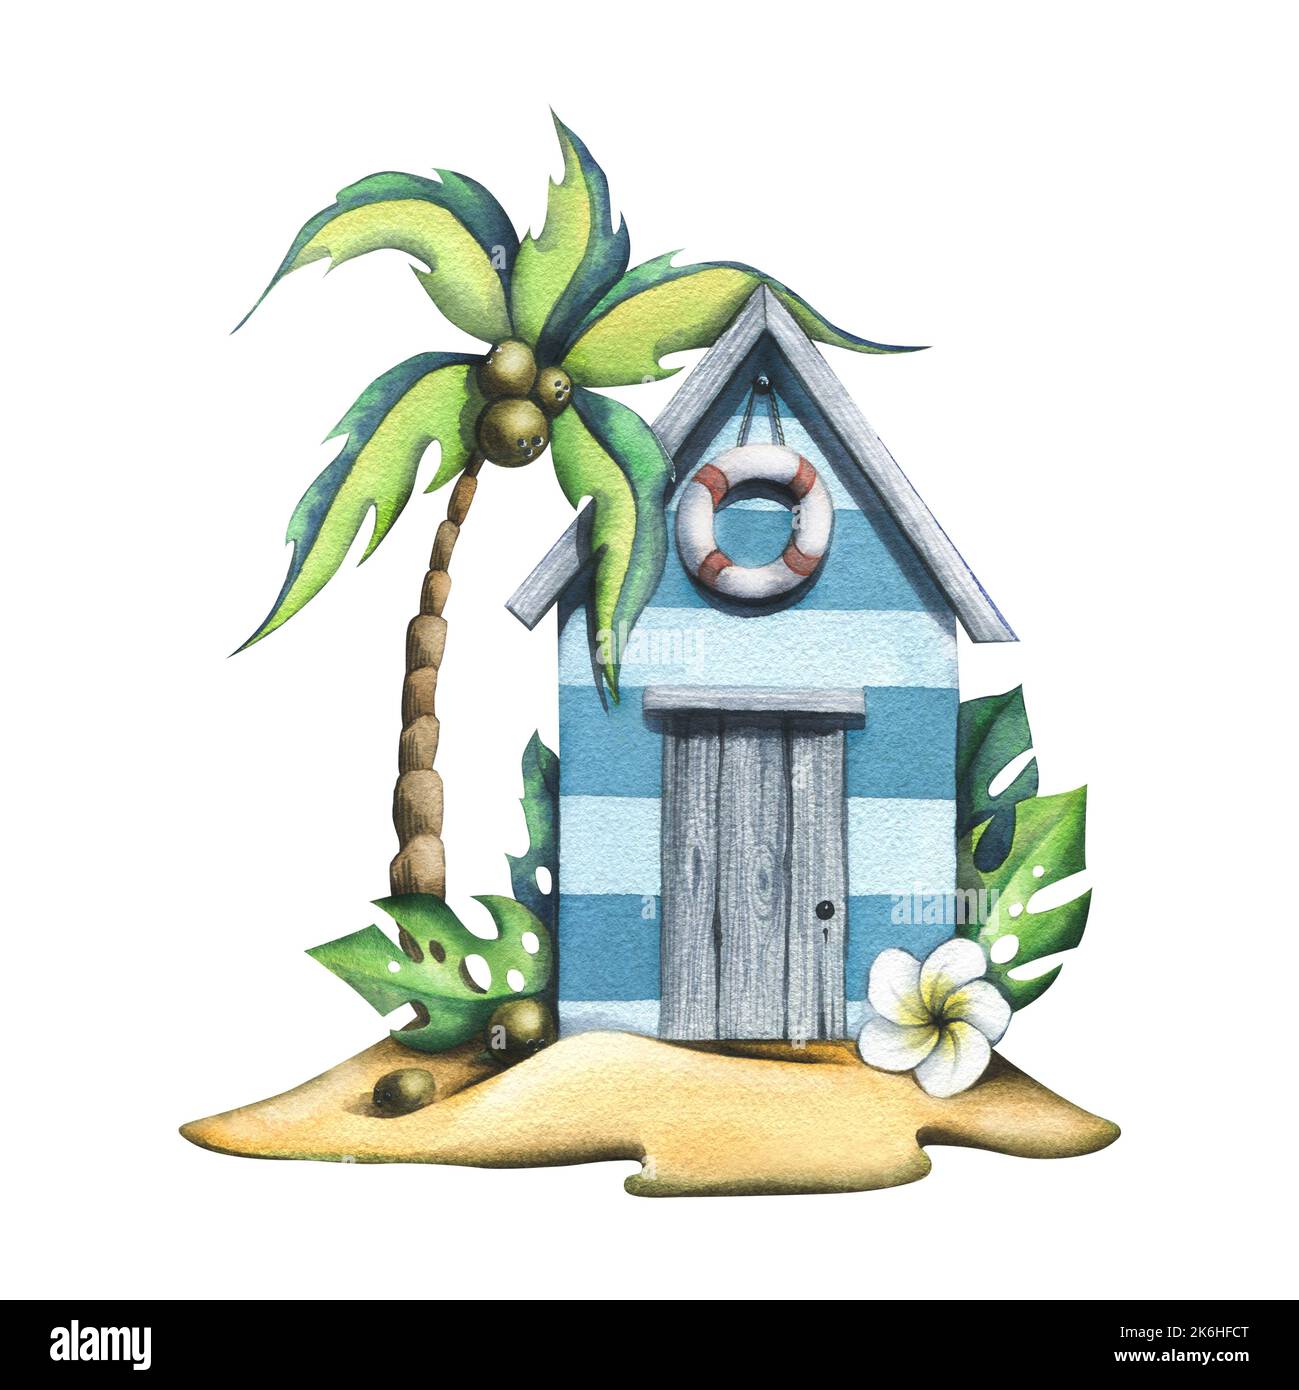 Eine tropische Insel mit einem Strandhaus, dekoriert mit einer Rettungsboje, Kokospalme und Monstera-Blättern, einer Plumeria-Blume. Aquarelldarstellung. Für die Stockfoto